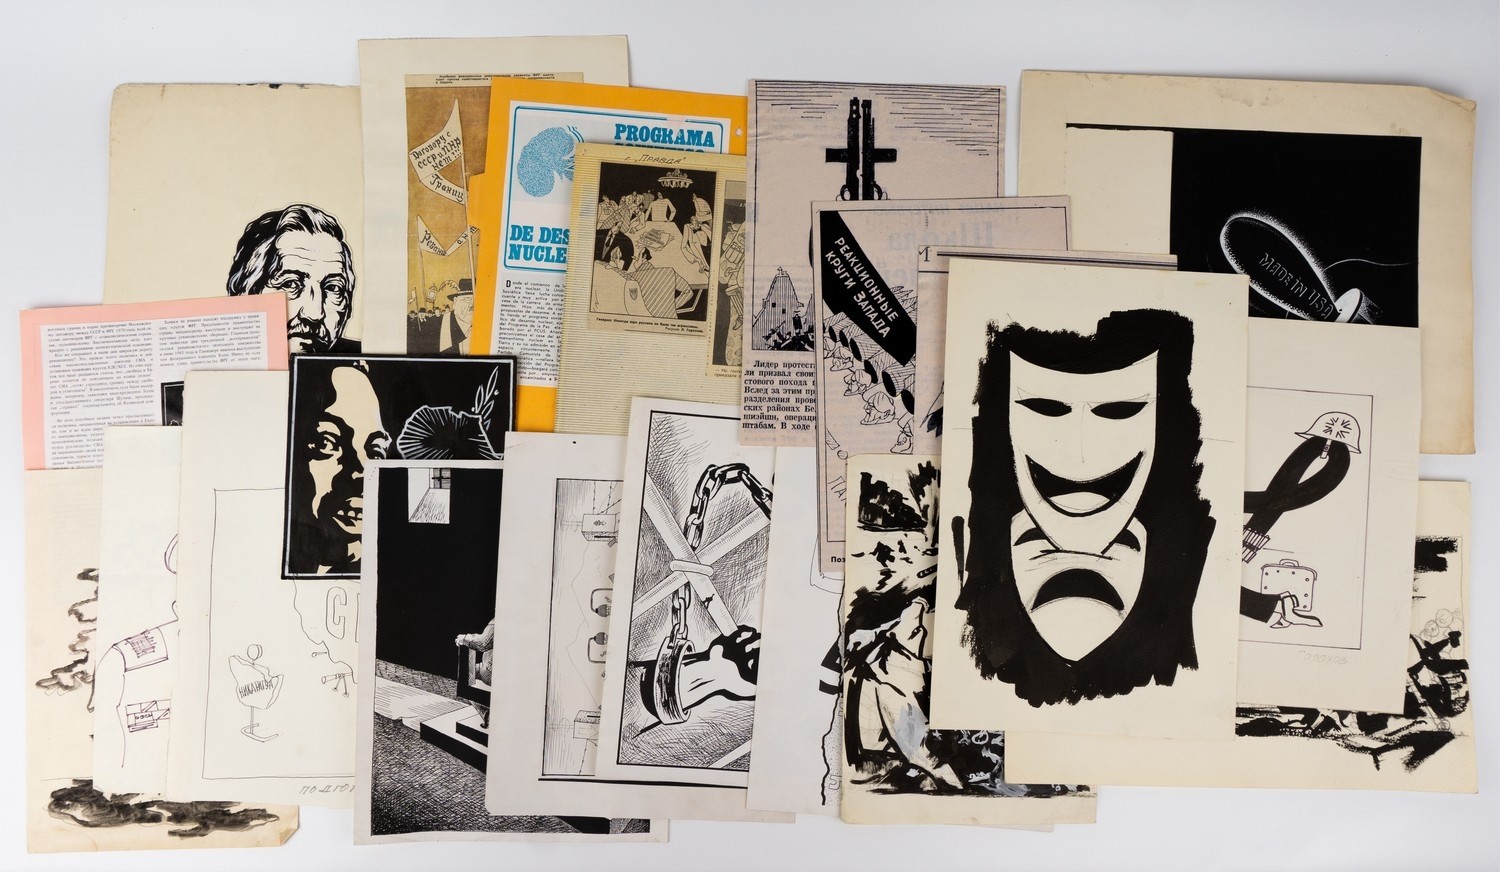 Горохов Л.Н. 10 листов графических работ и 11 листов фотокопий, печатных воспроизведений и вырезок с воспроизведением работ. 1970-е - 1980-е годы.